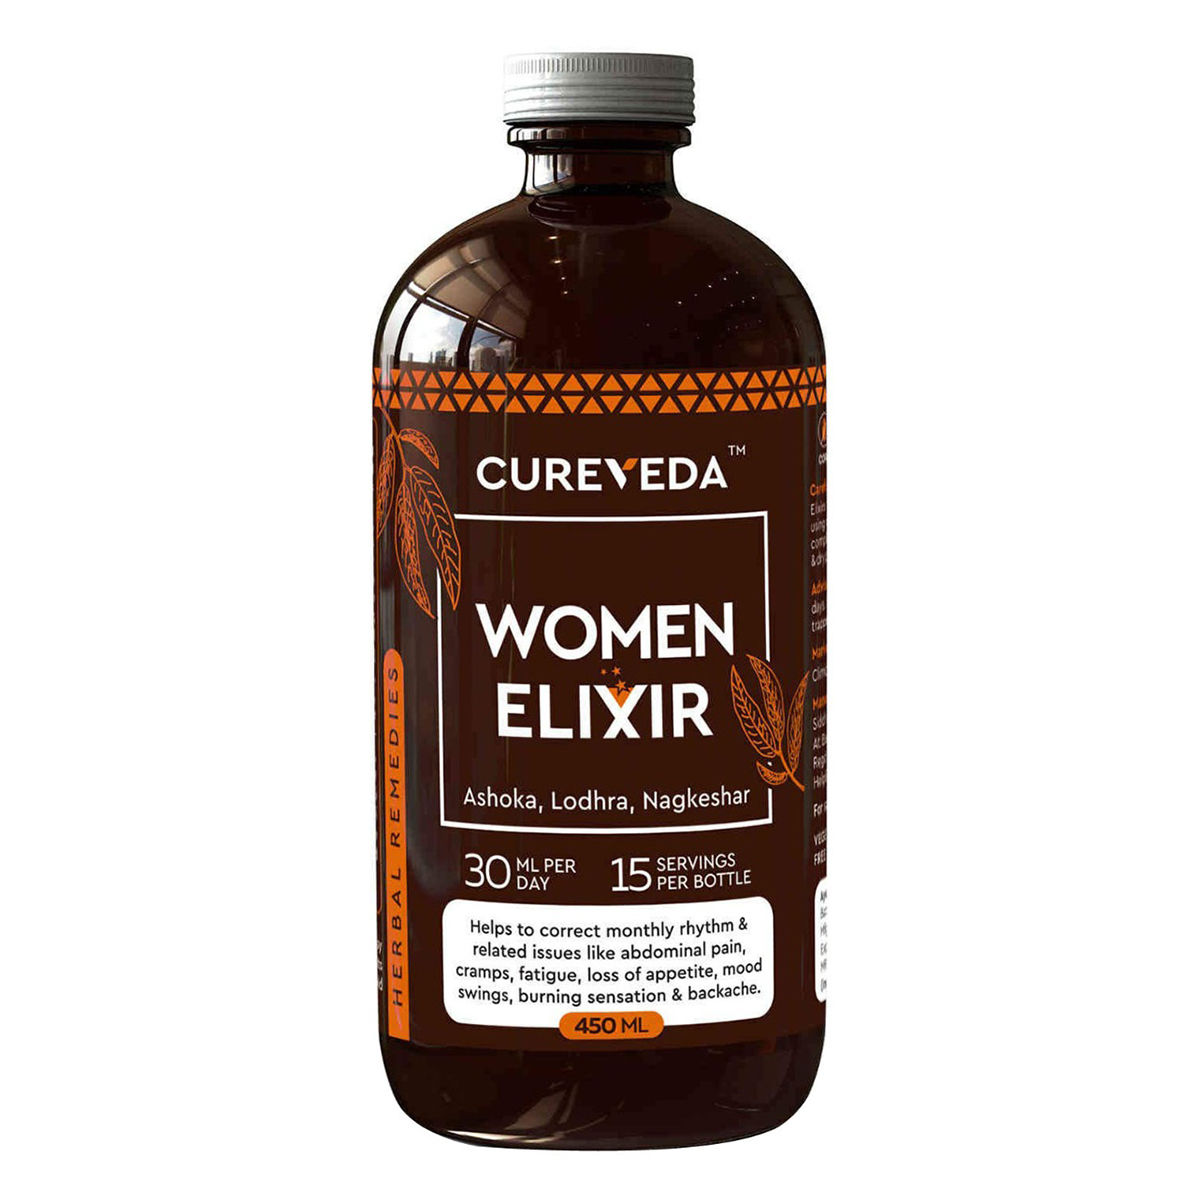 Buy Cureveda Women Elixir, 450 ml Online